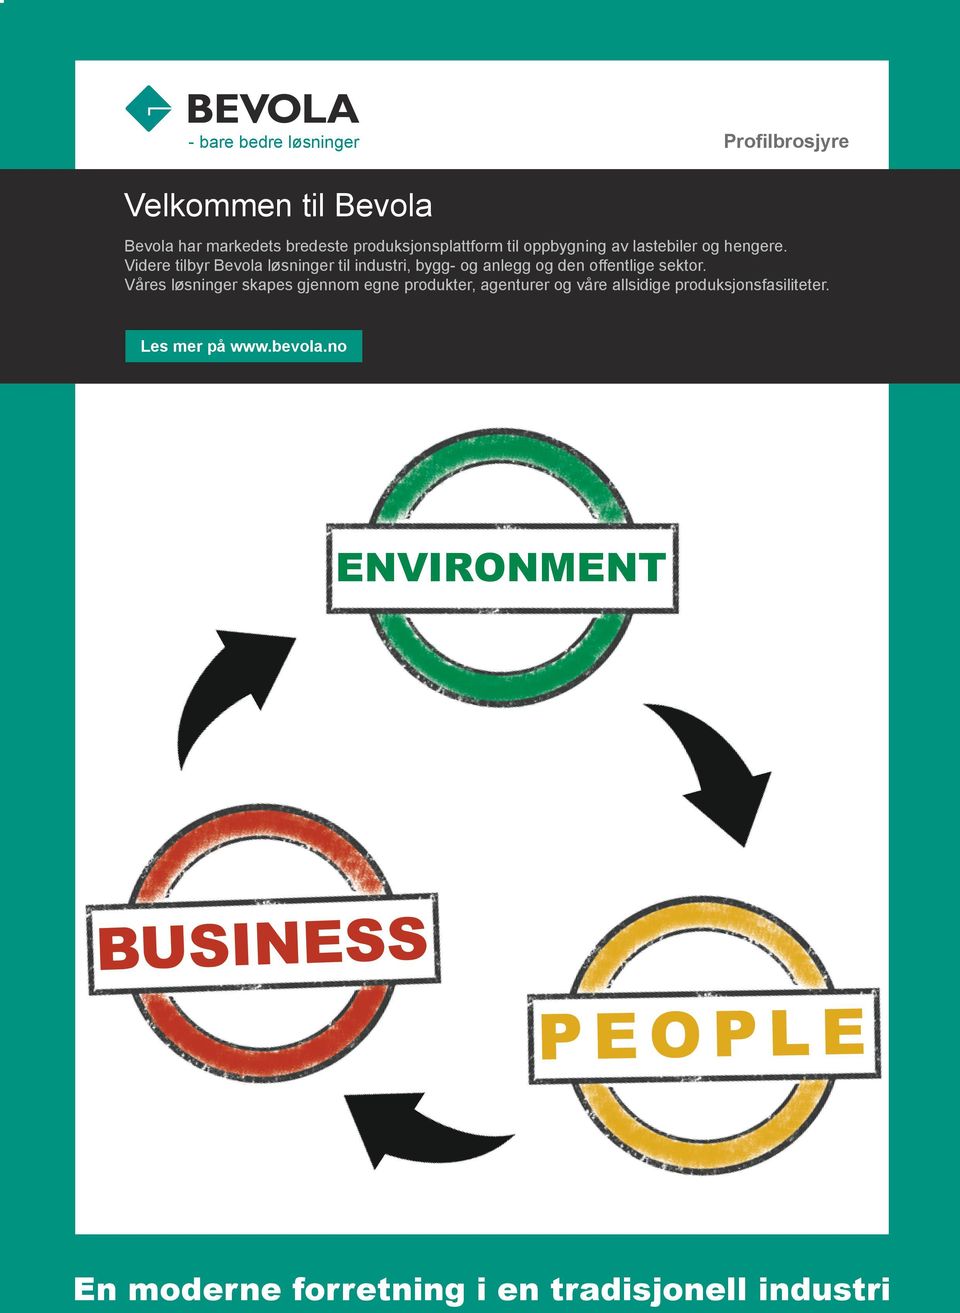 Våres løsninger skapes gjennom egne produkter, agenturer og våre allsidige produksjonsfasiliteter. Les mer på www.bevola.